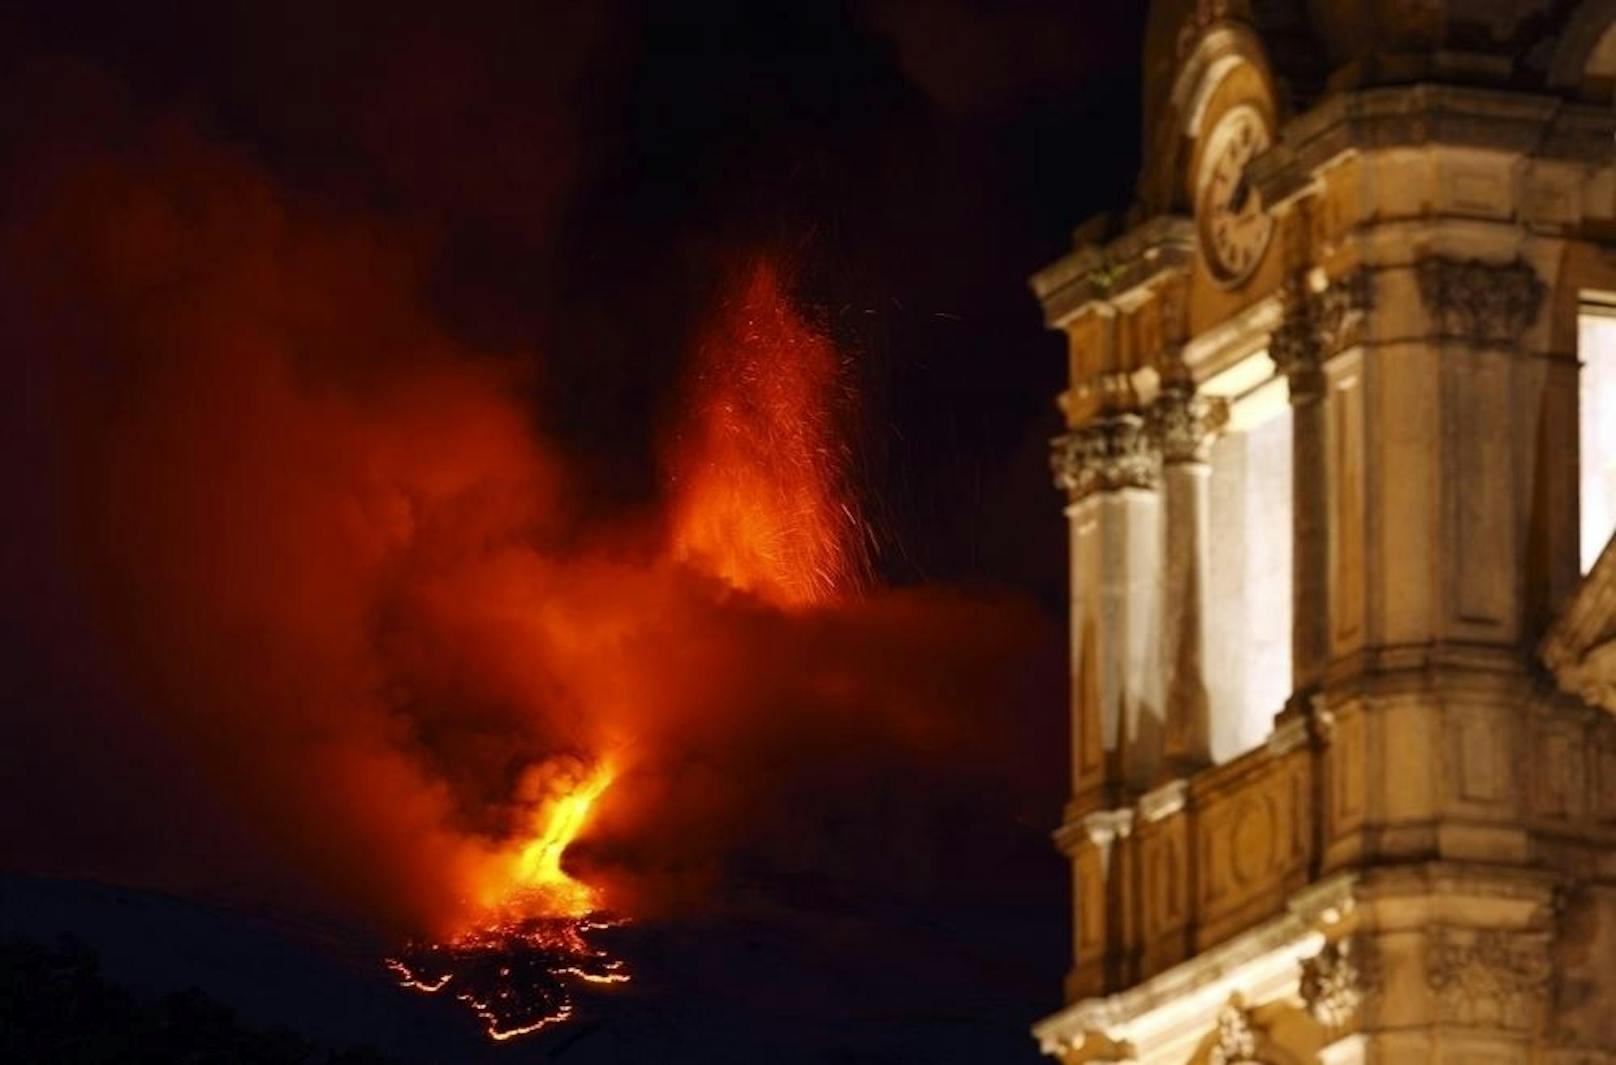 Der Ätna ist der höchste Vulkan Europas und gehört zu den aktivsten der Welt.